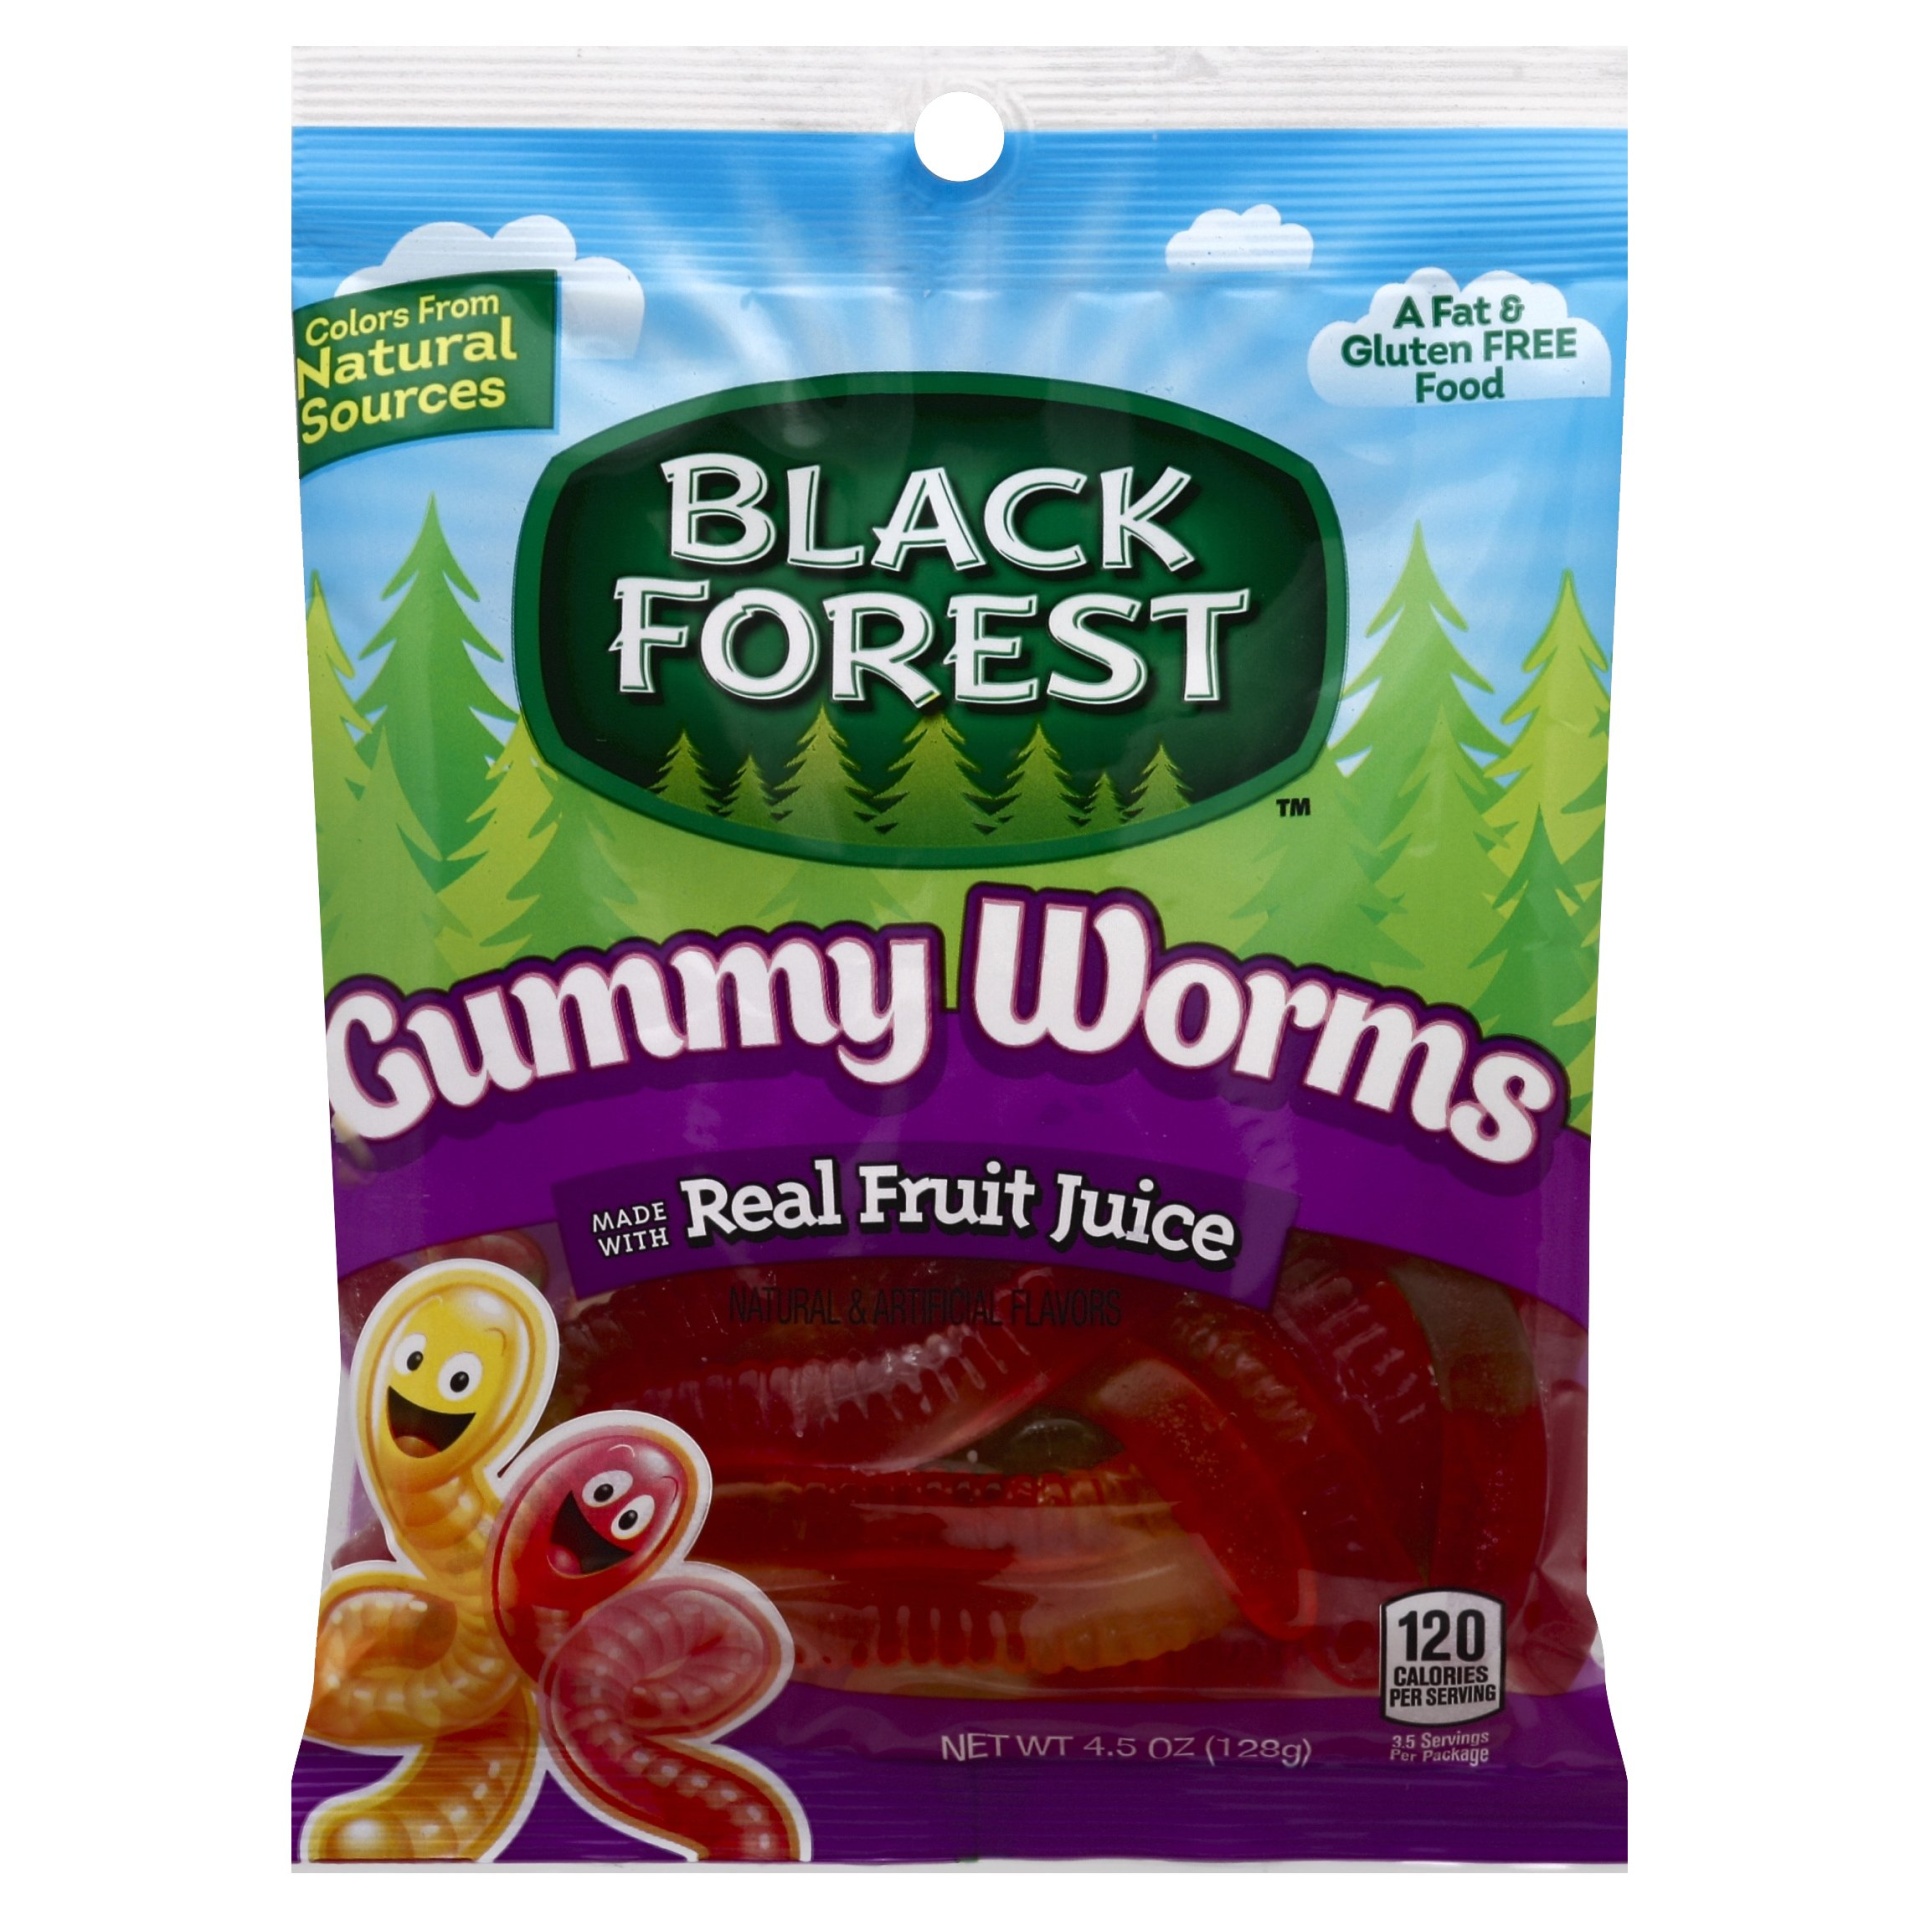 black forest gummy worms